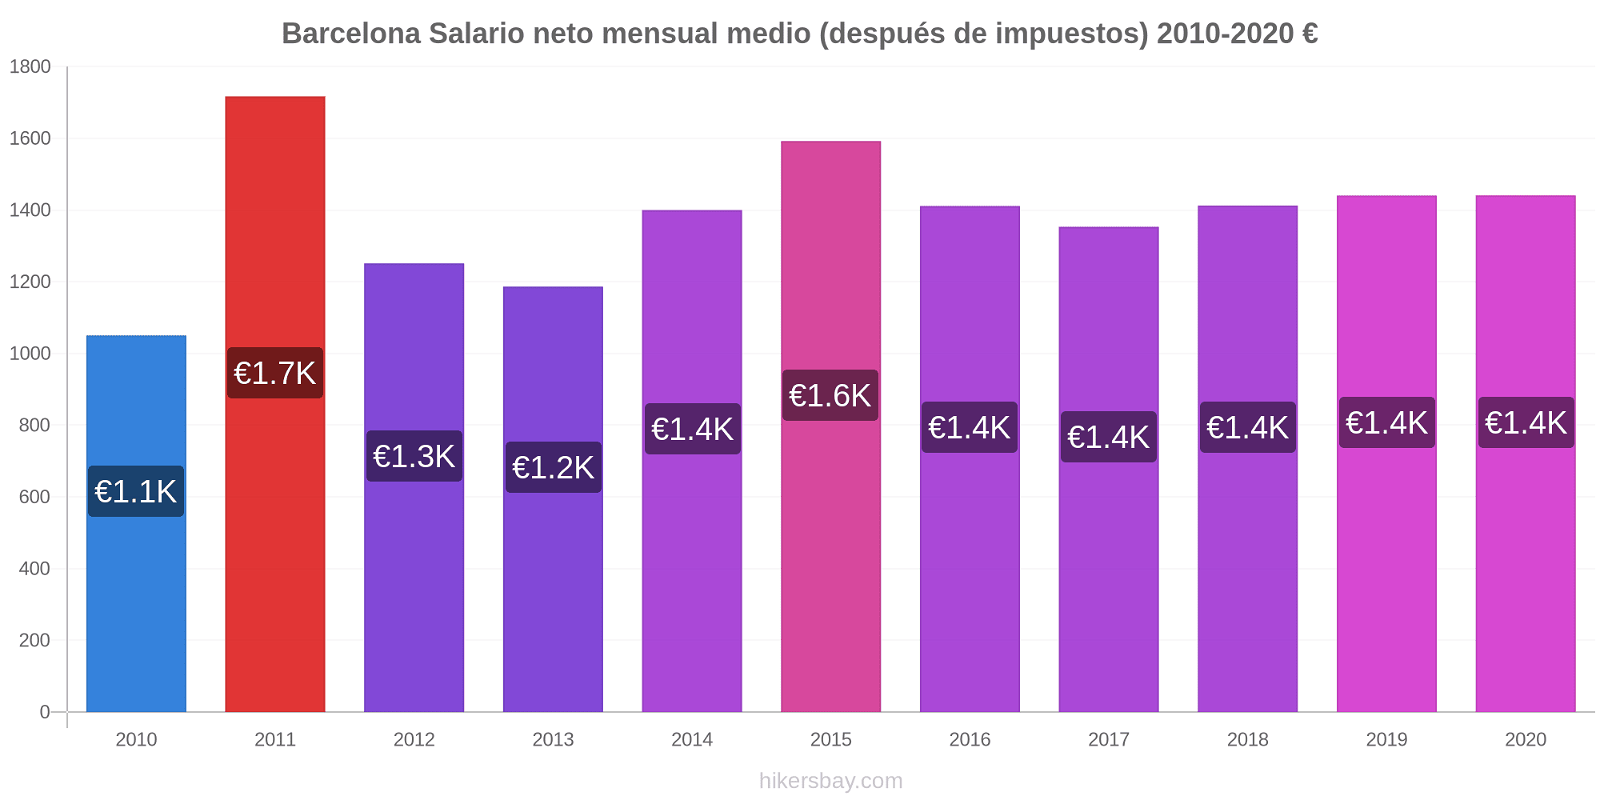 Barcelona cambios de precios Promedio mensual del salario neto (después de pagar impuestos) hikersbay.com